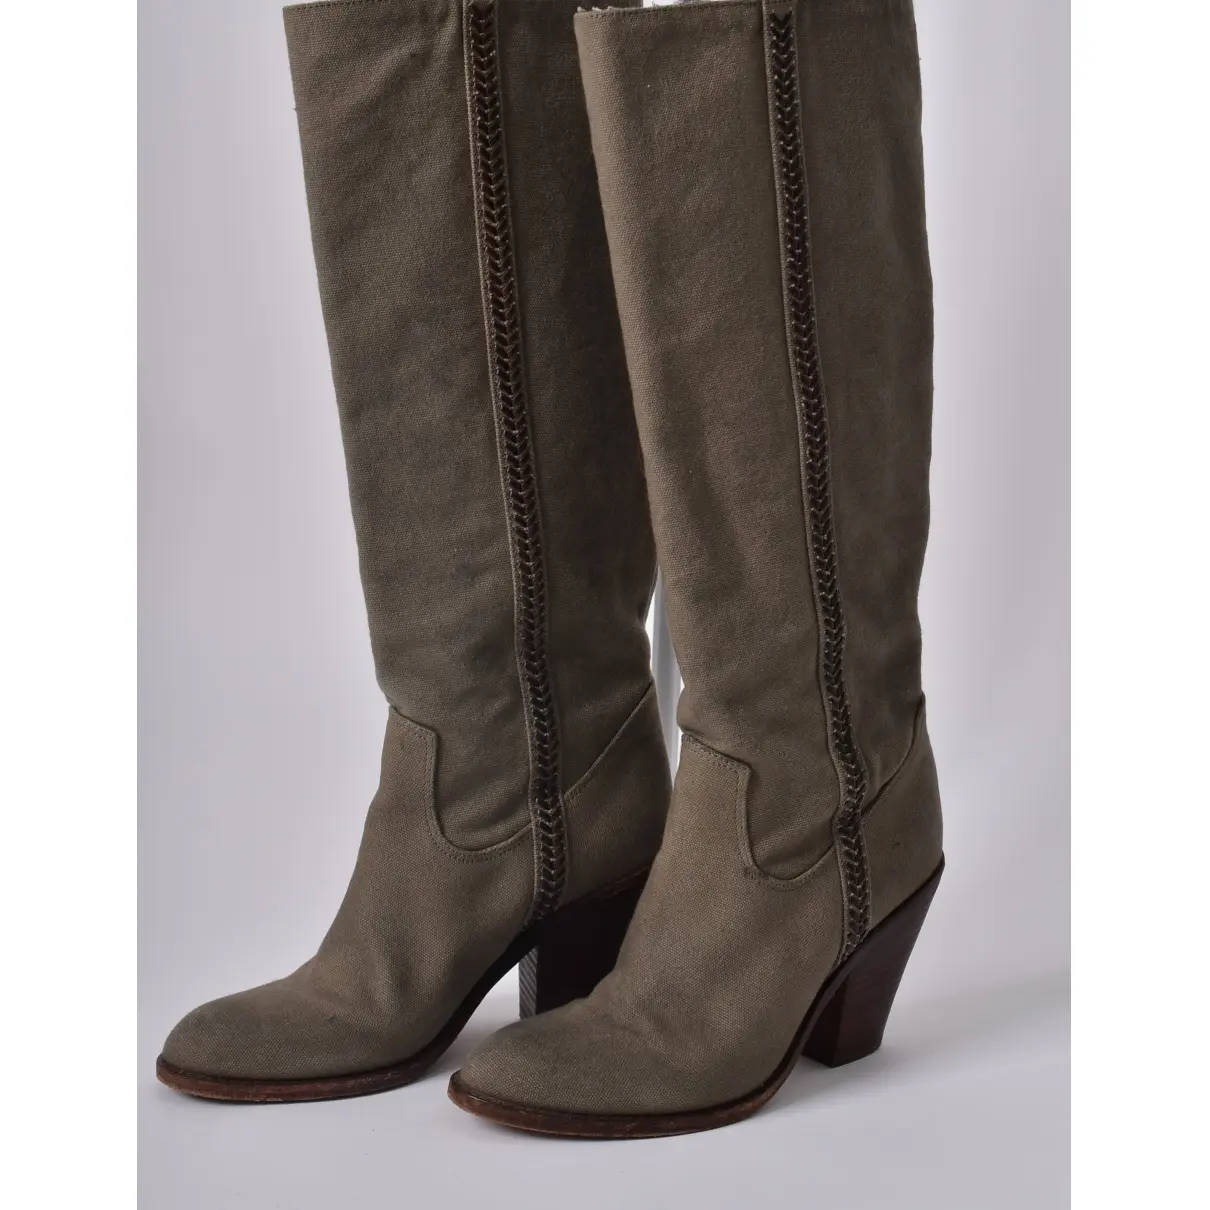 Buy Ba&sh Cloth cowboy boots online